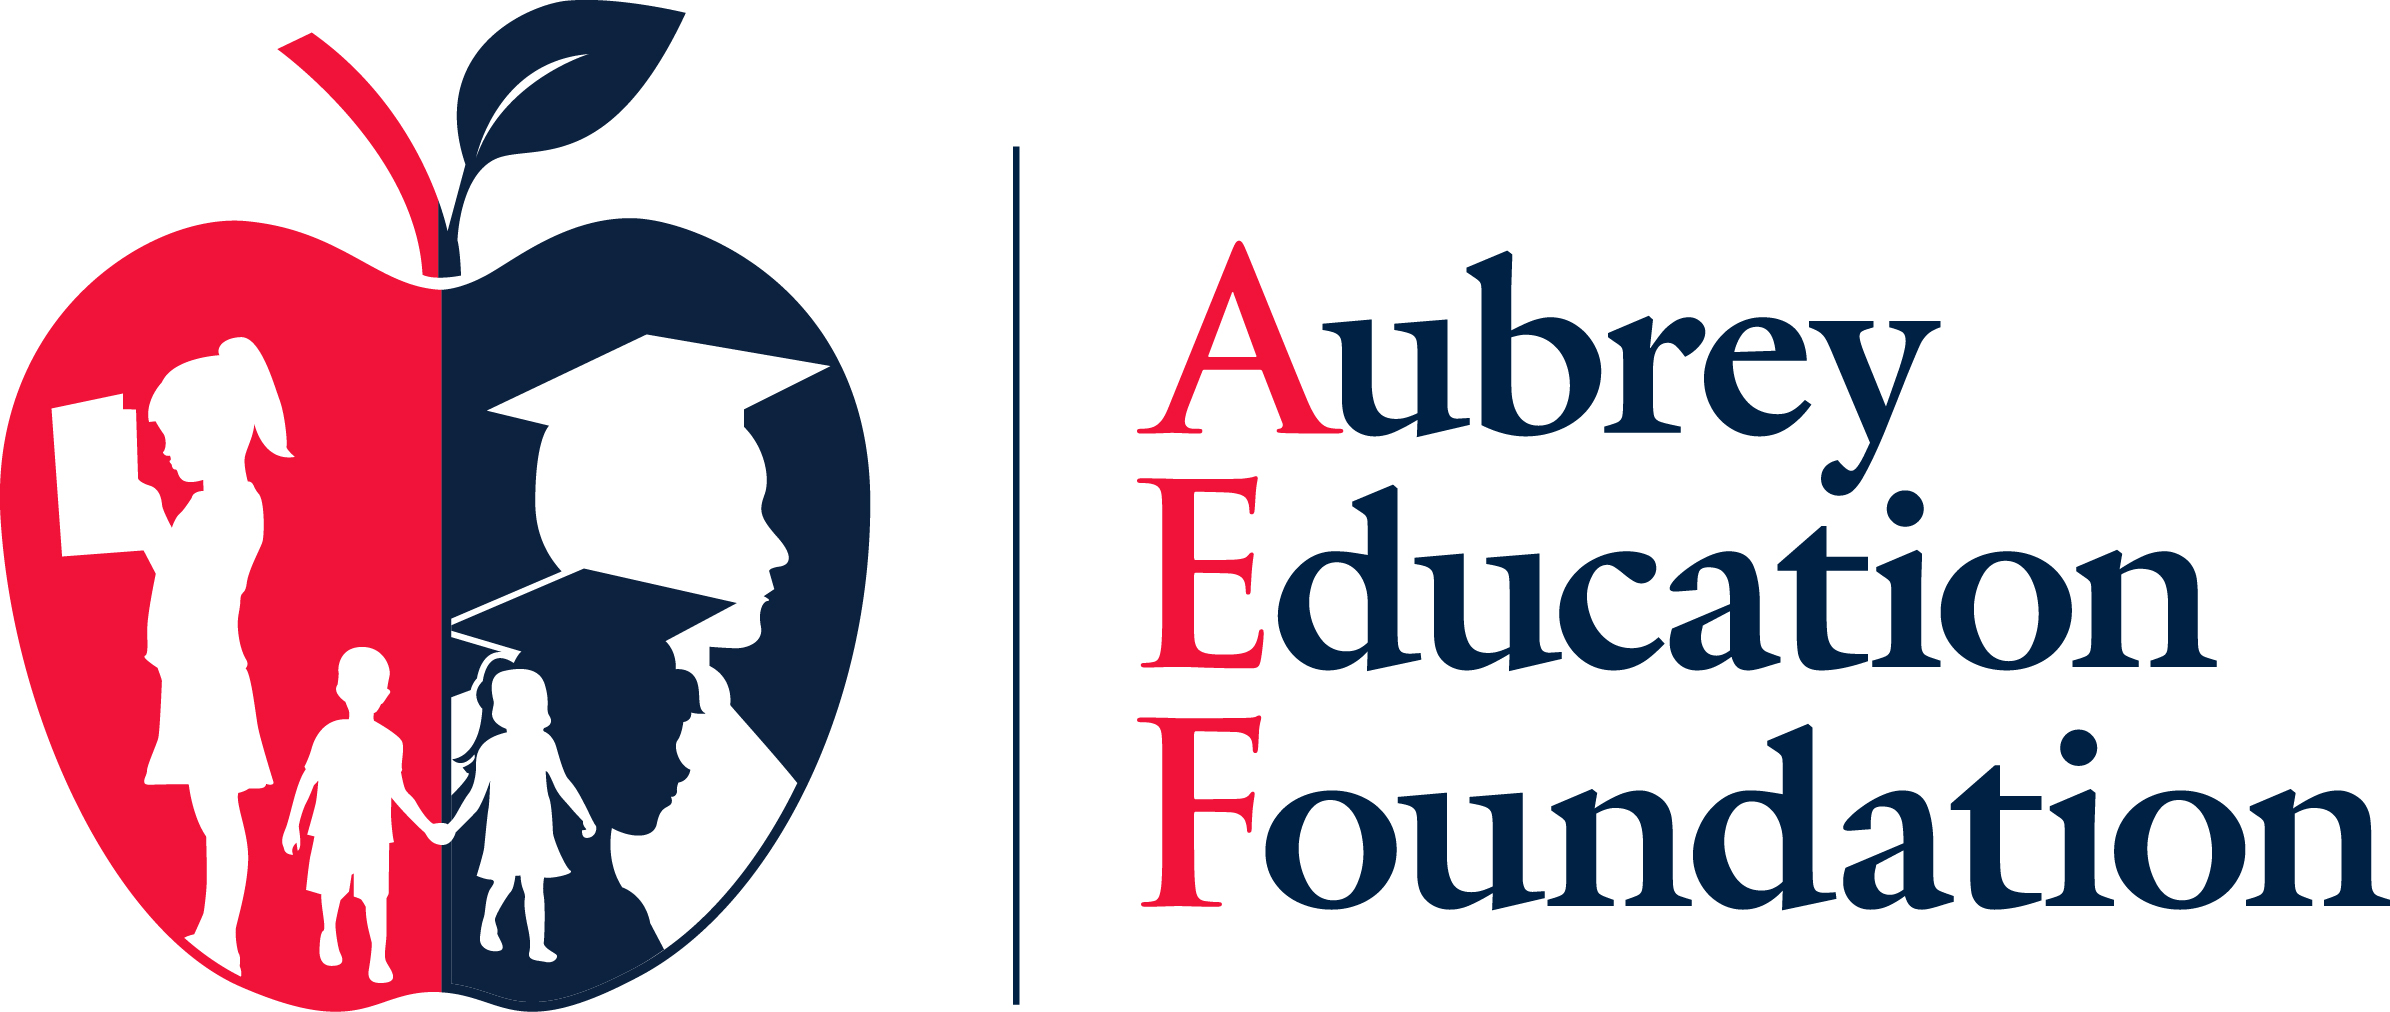 Aubrey Education Foundation logo